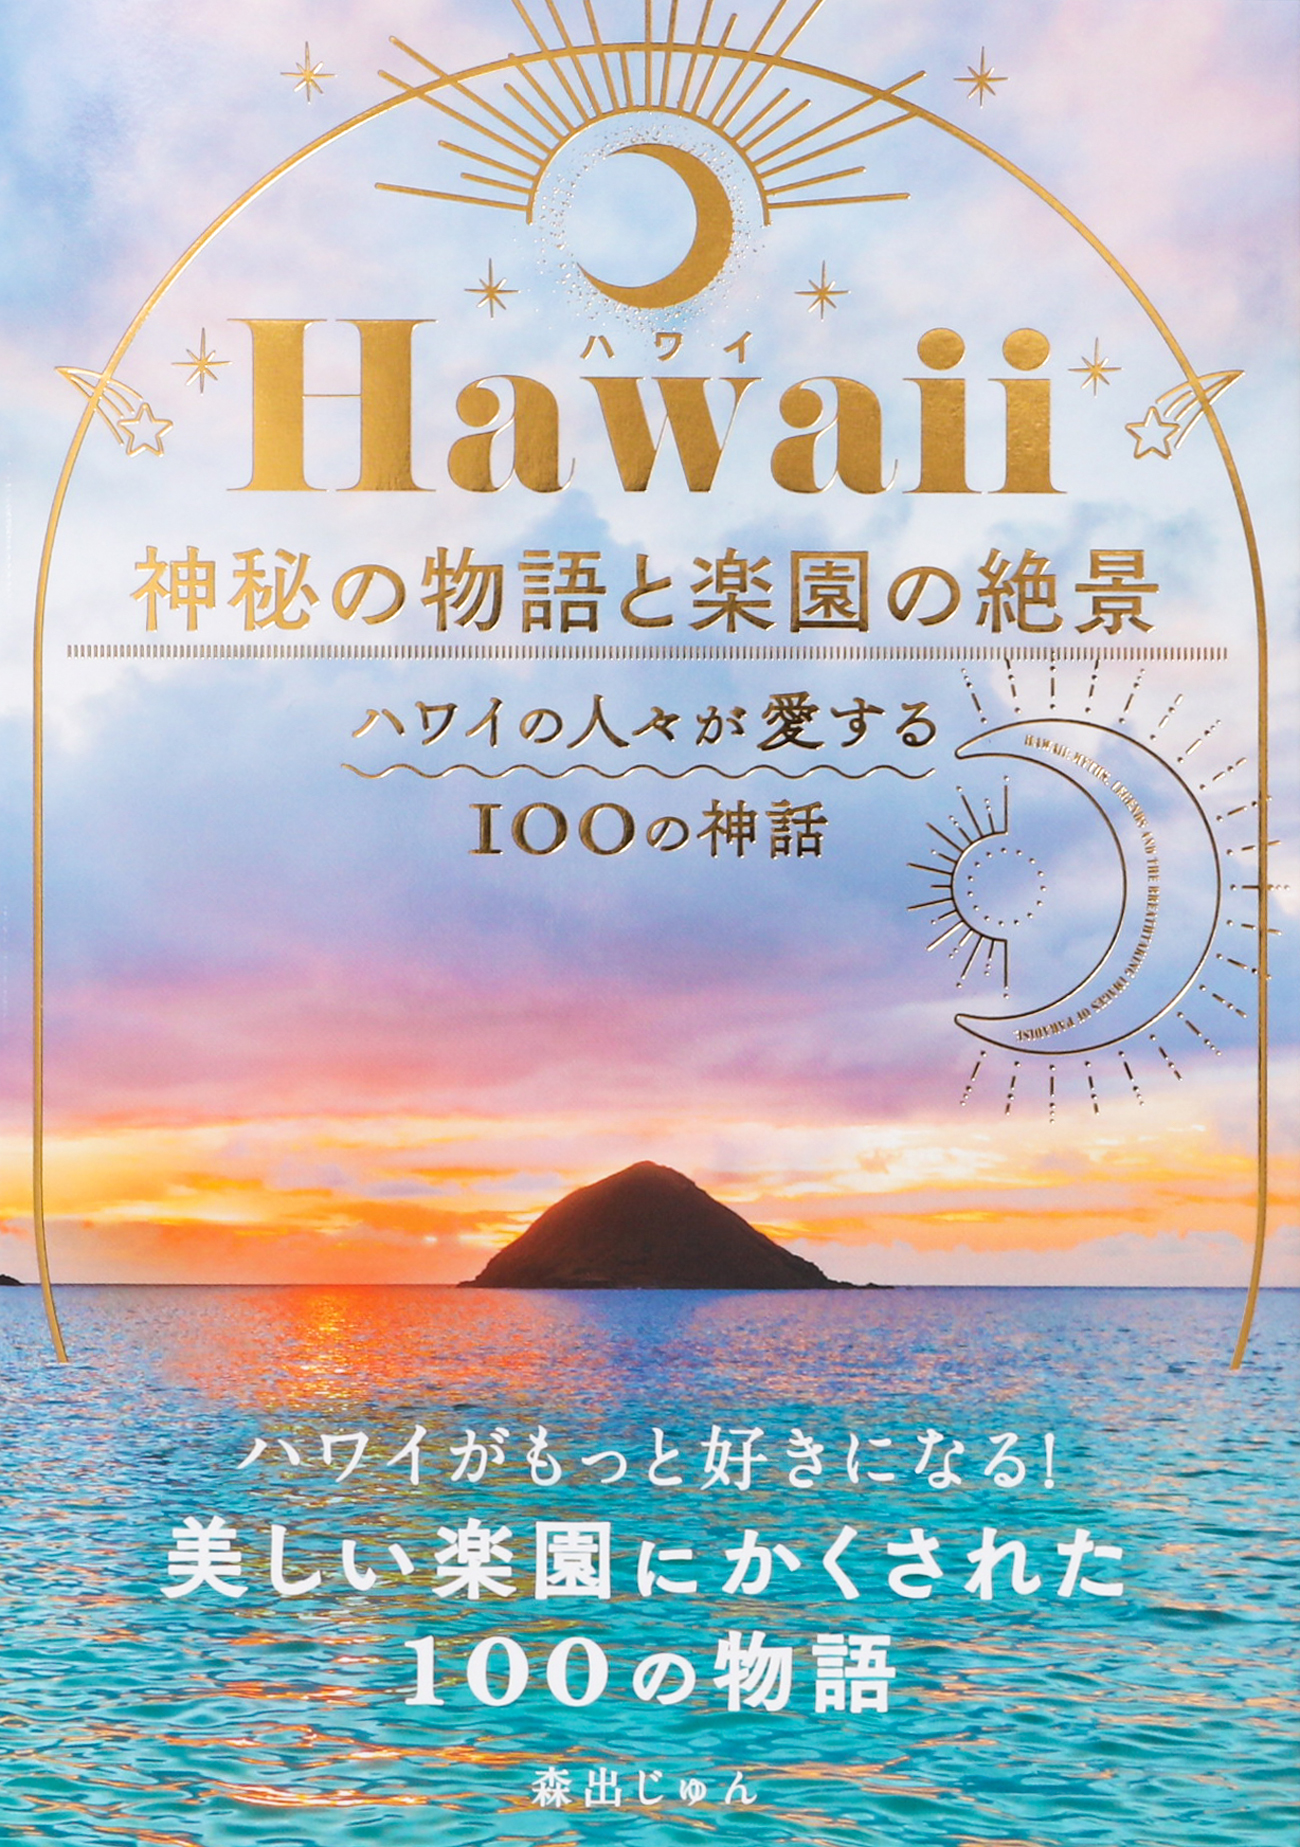 ハワイがもっと好きになる 美しい海 空 自然にまつわる神話と絶景 Hawaii 神秘の物語と楽園の絶景 ハワイの人々が愛する100の神話 を7 14発売 株式会社パイ インターナショナルのプレスリリース